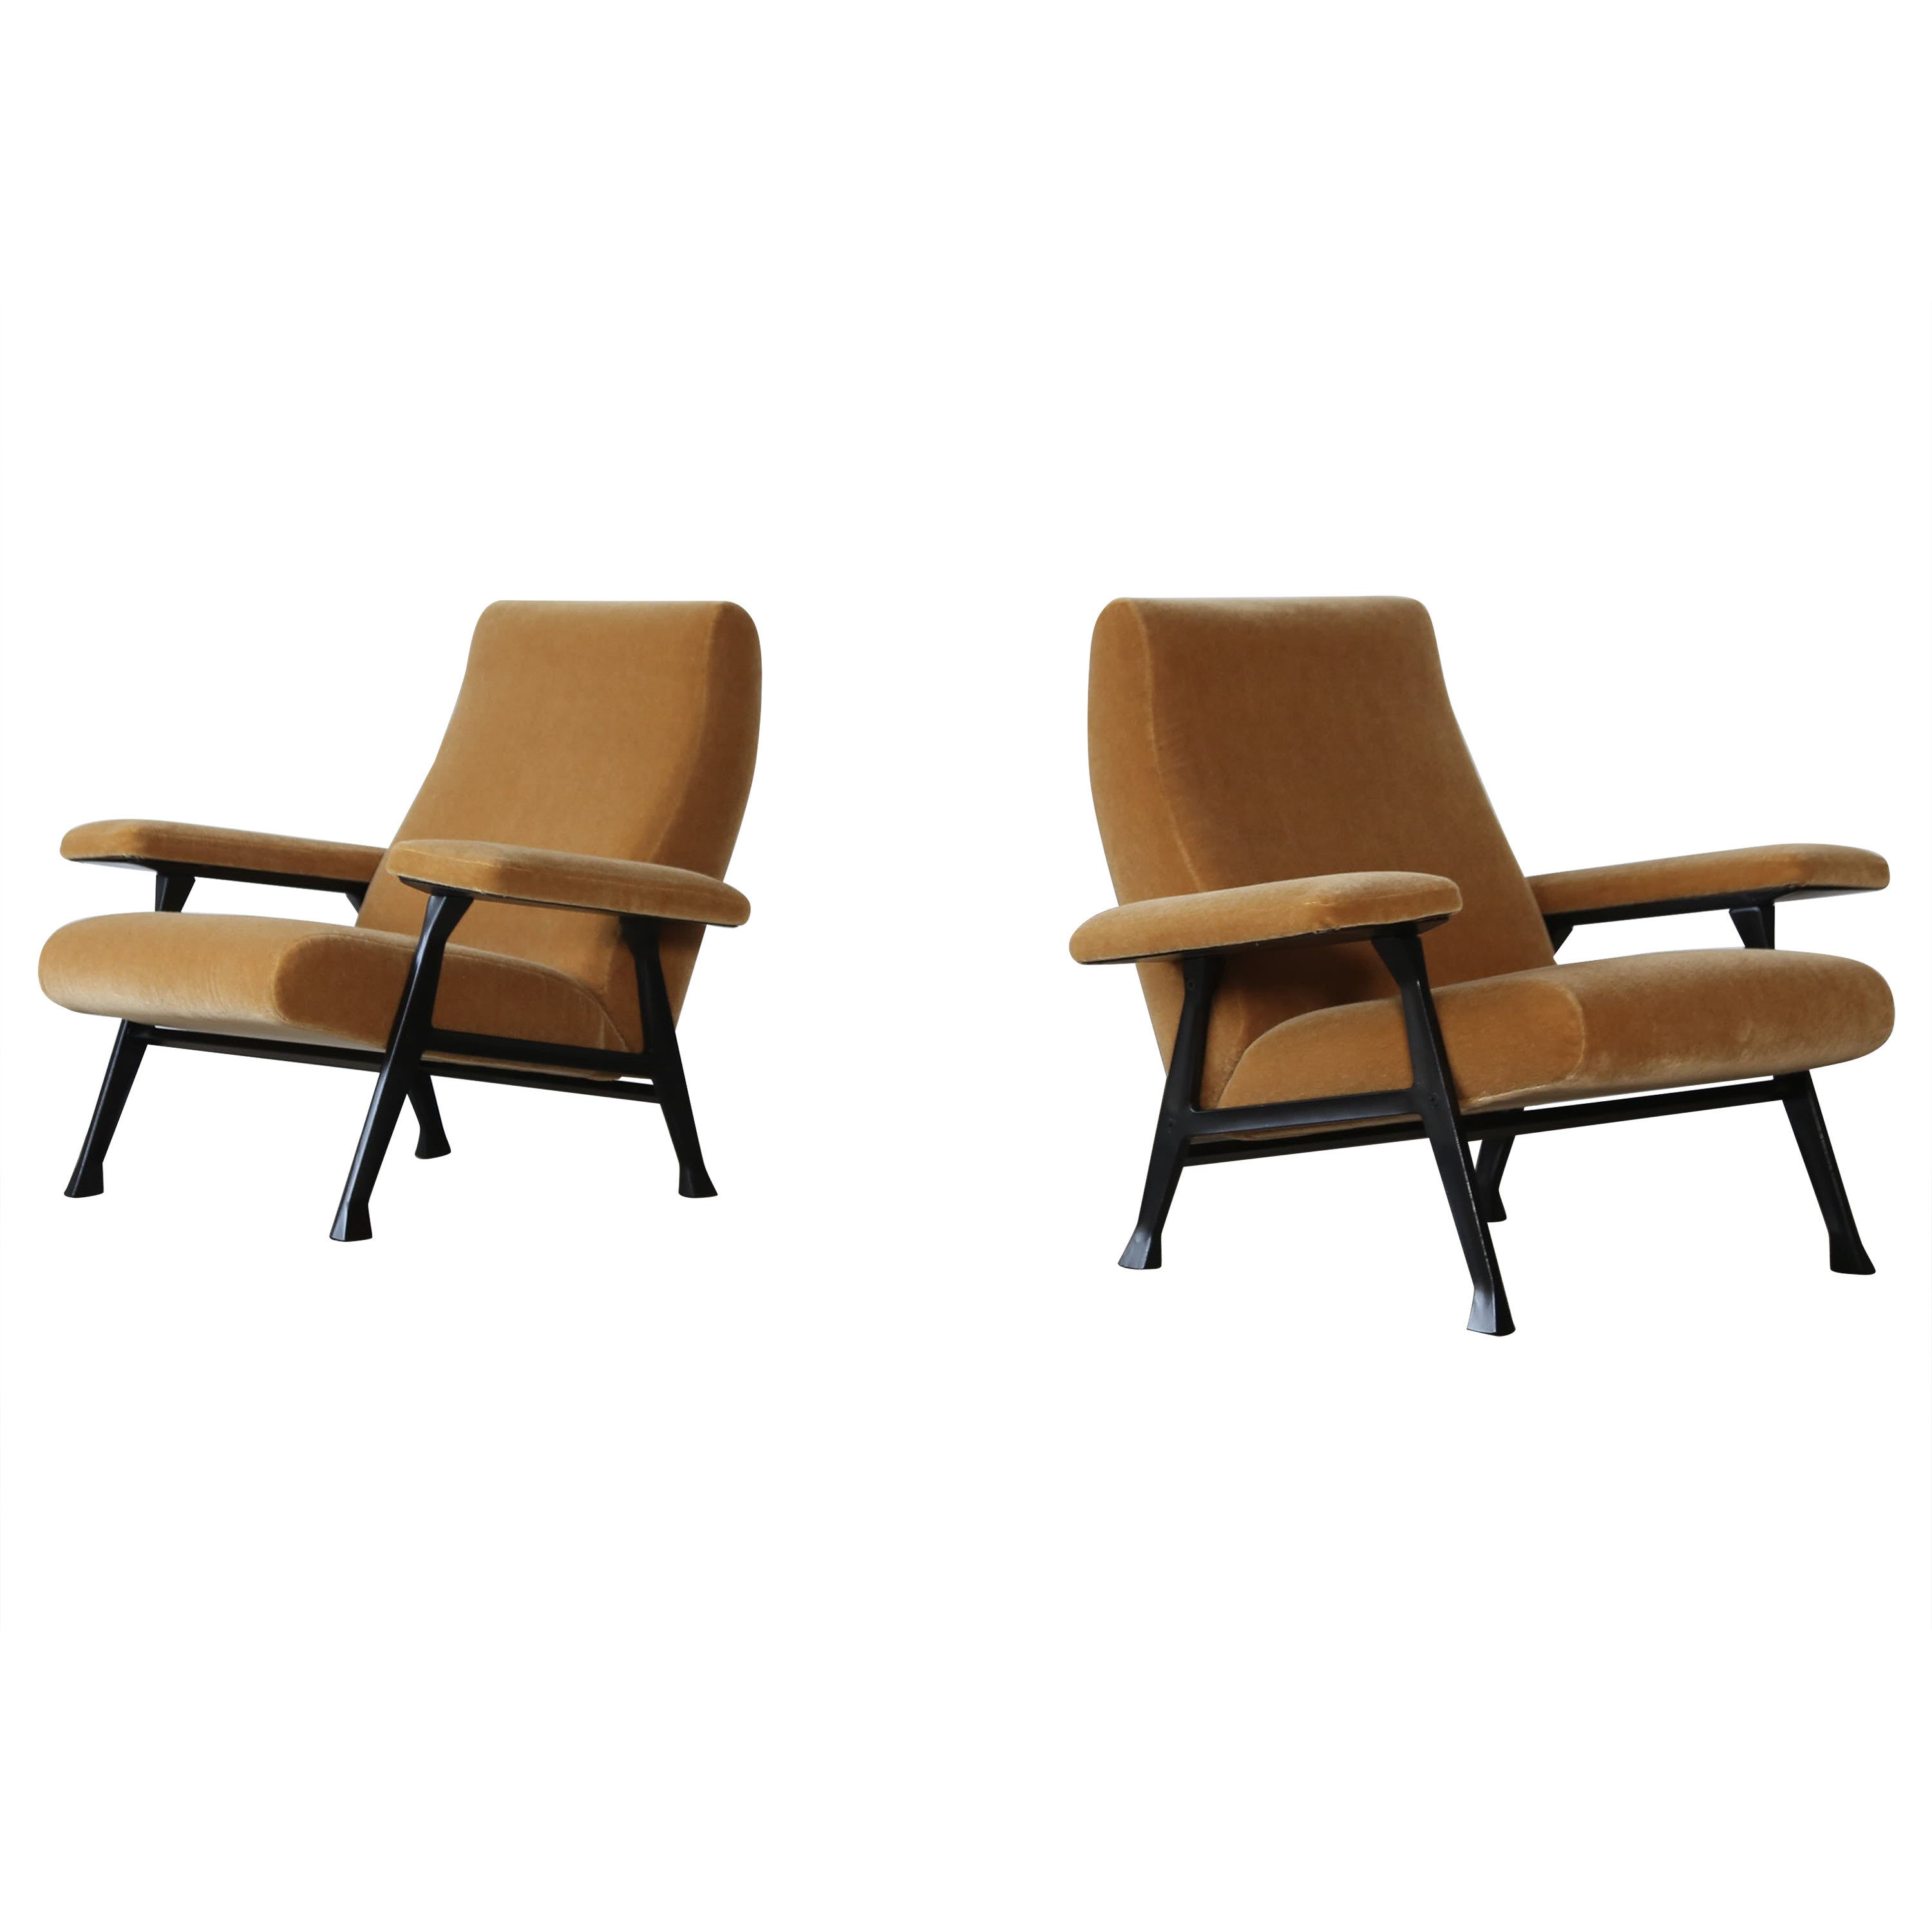 Rare paire d'authentiques chaises de salle Roberto Menghi des années 1950, Italie, New Pure Mohair